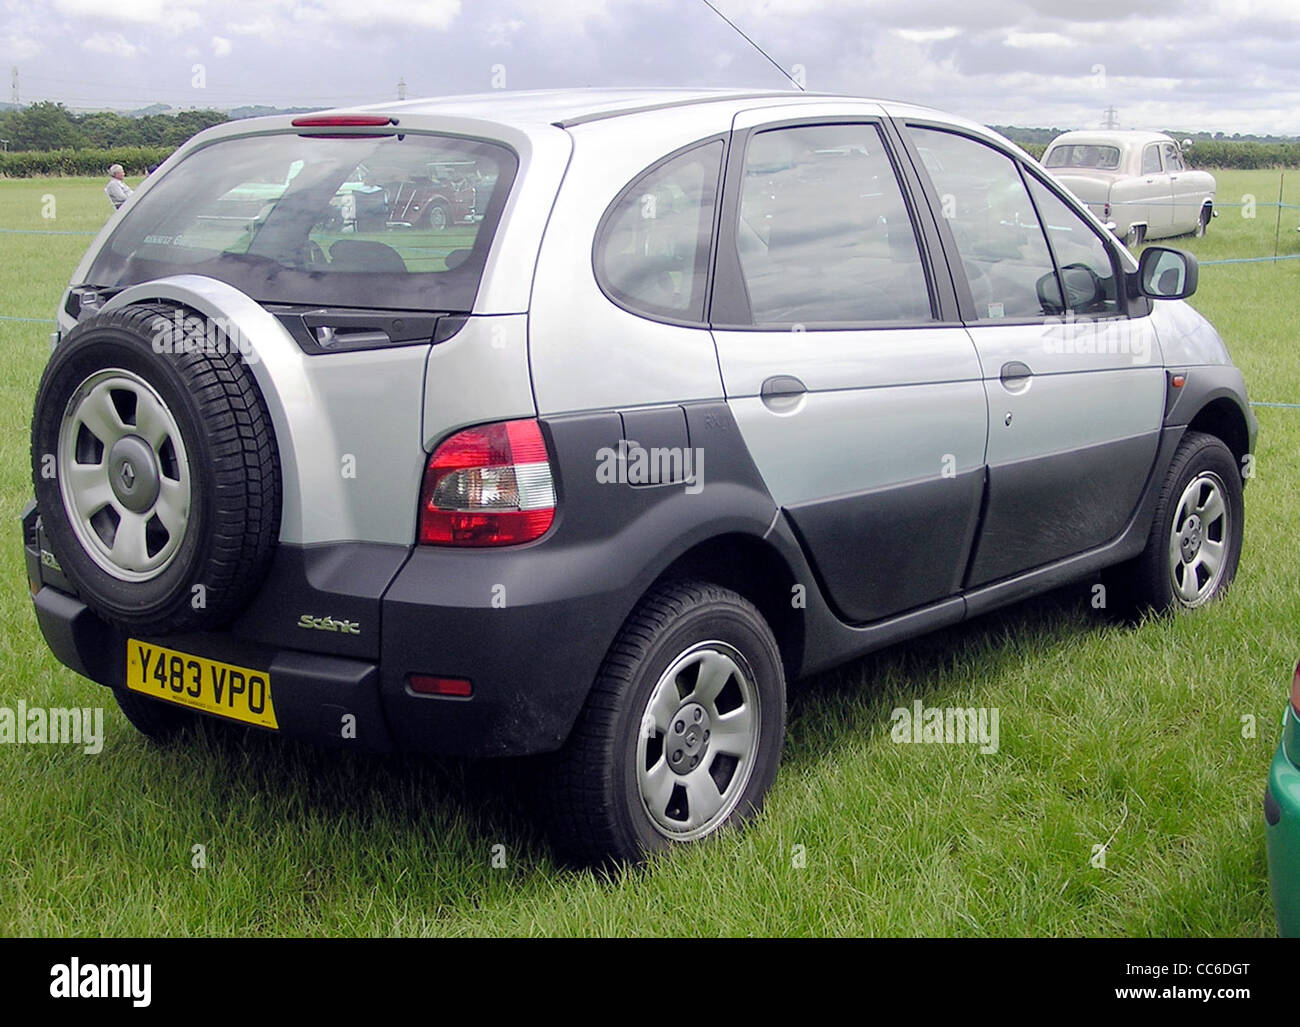 2001 Renault Scenic à Coalpit Heath Car Show, près de Bristol, Angleterre. Banque D'Images